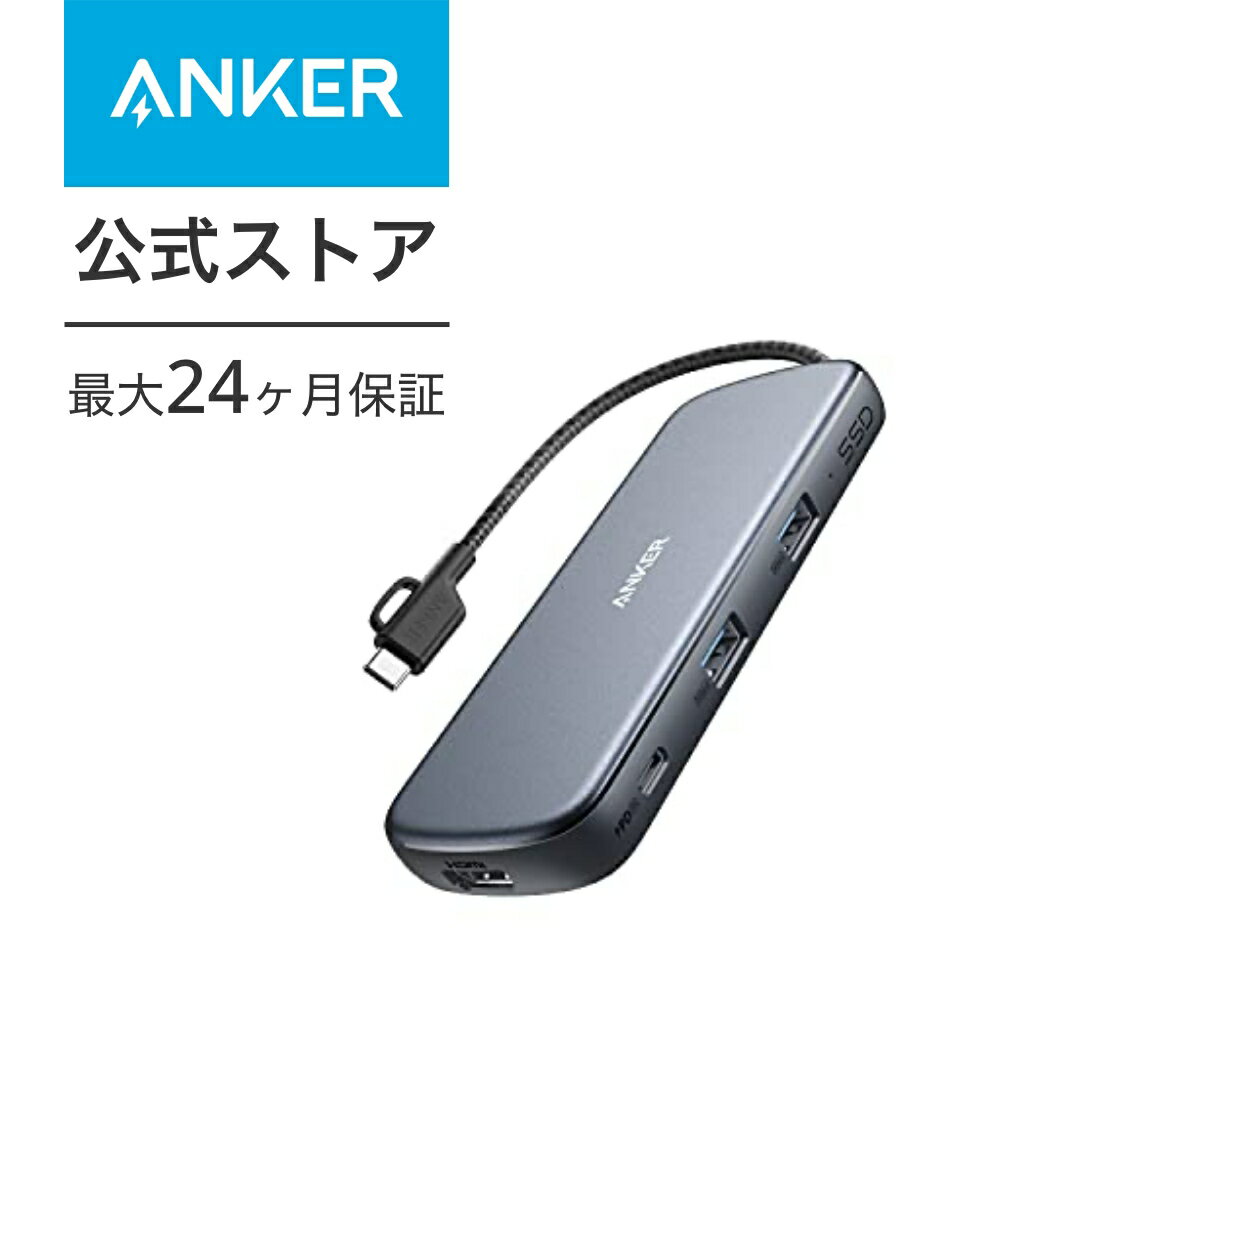 【あす楽対応】Anker PowerExpand 4-in-1 USB-C SSD ハブ (256GB) SSDストレージ内蔵 4K対応 HDMI 100W USB Power Delivery対応 USB-Cポート USB-A ポート MacBook Pro / iPad Pro / ChromeBook 他対応